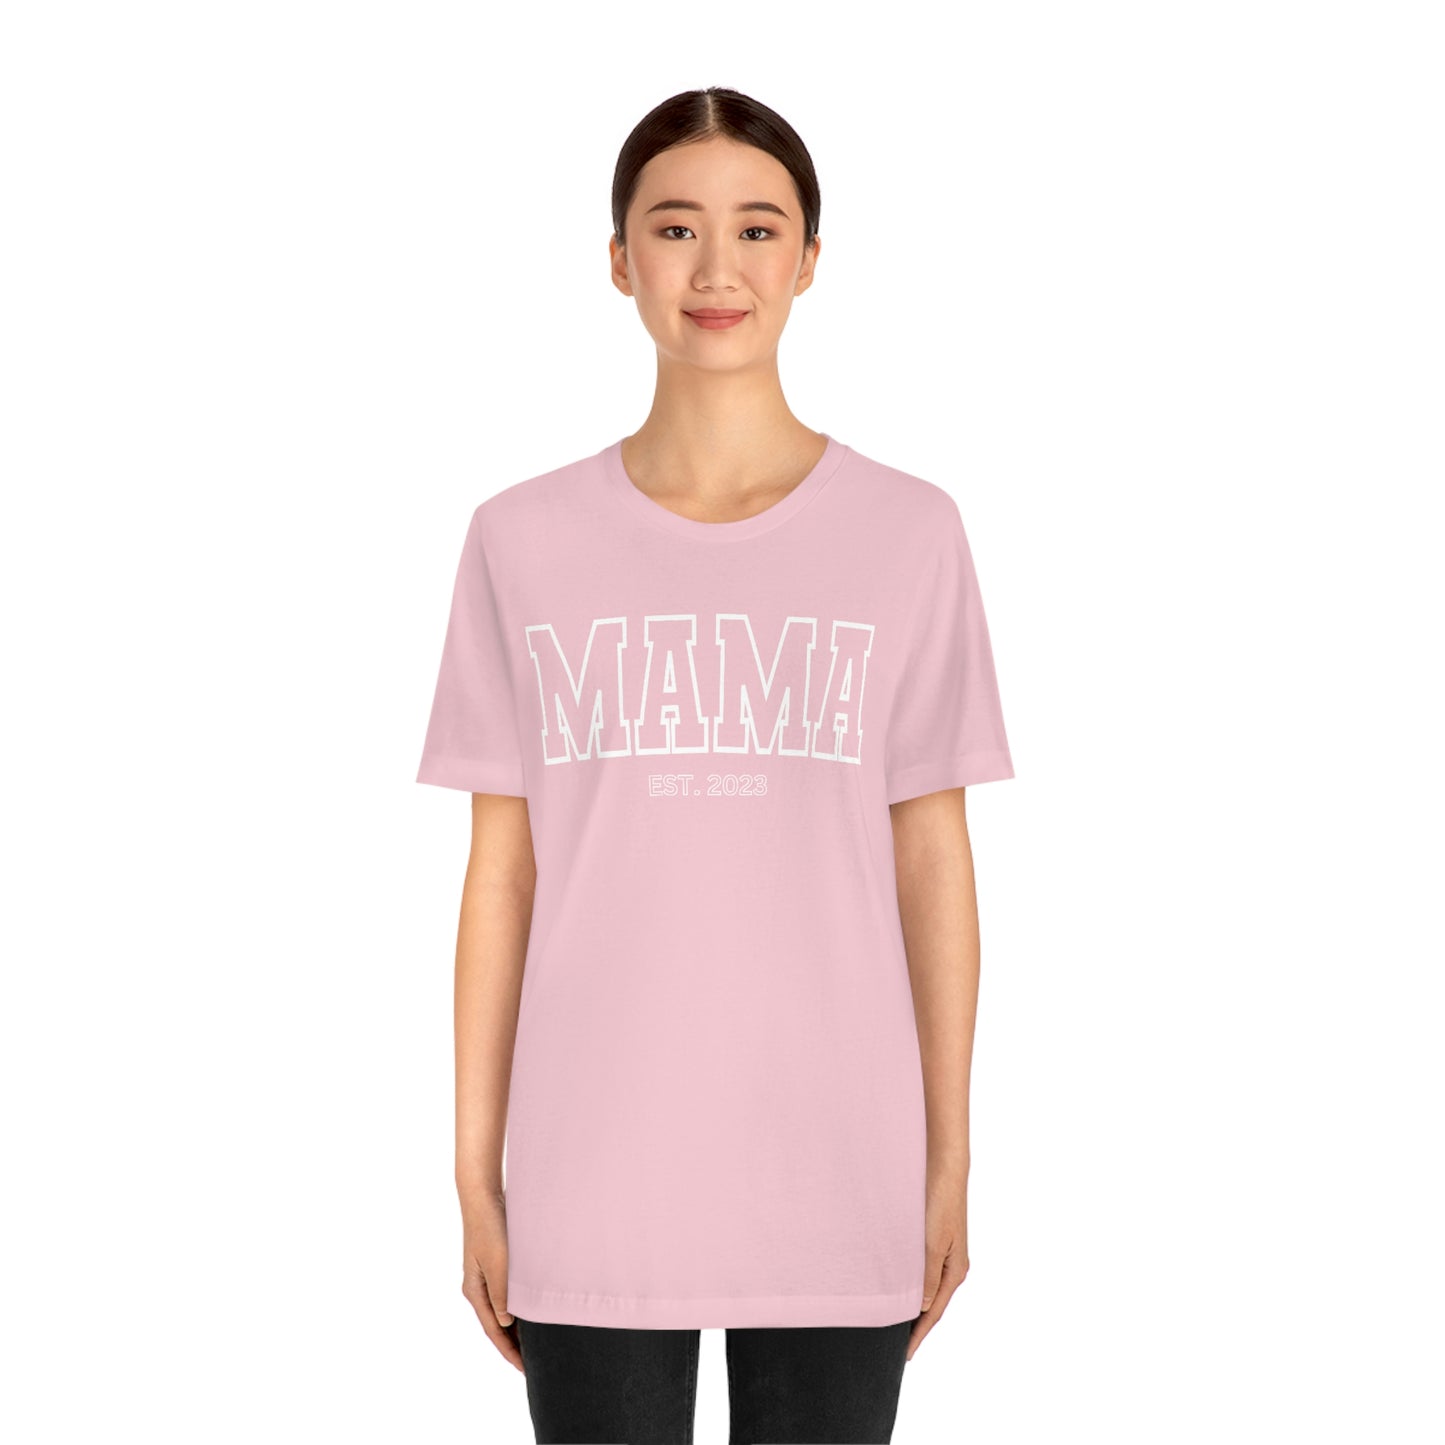 MAMA est 2023 shirt - new mom shirt - baby shower gift